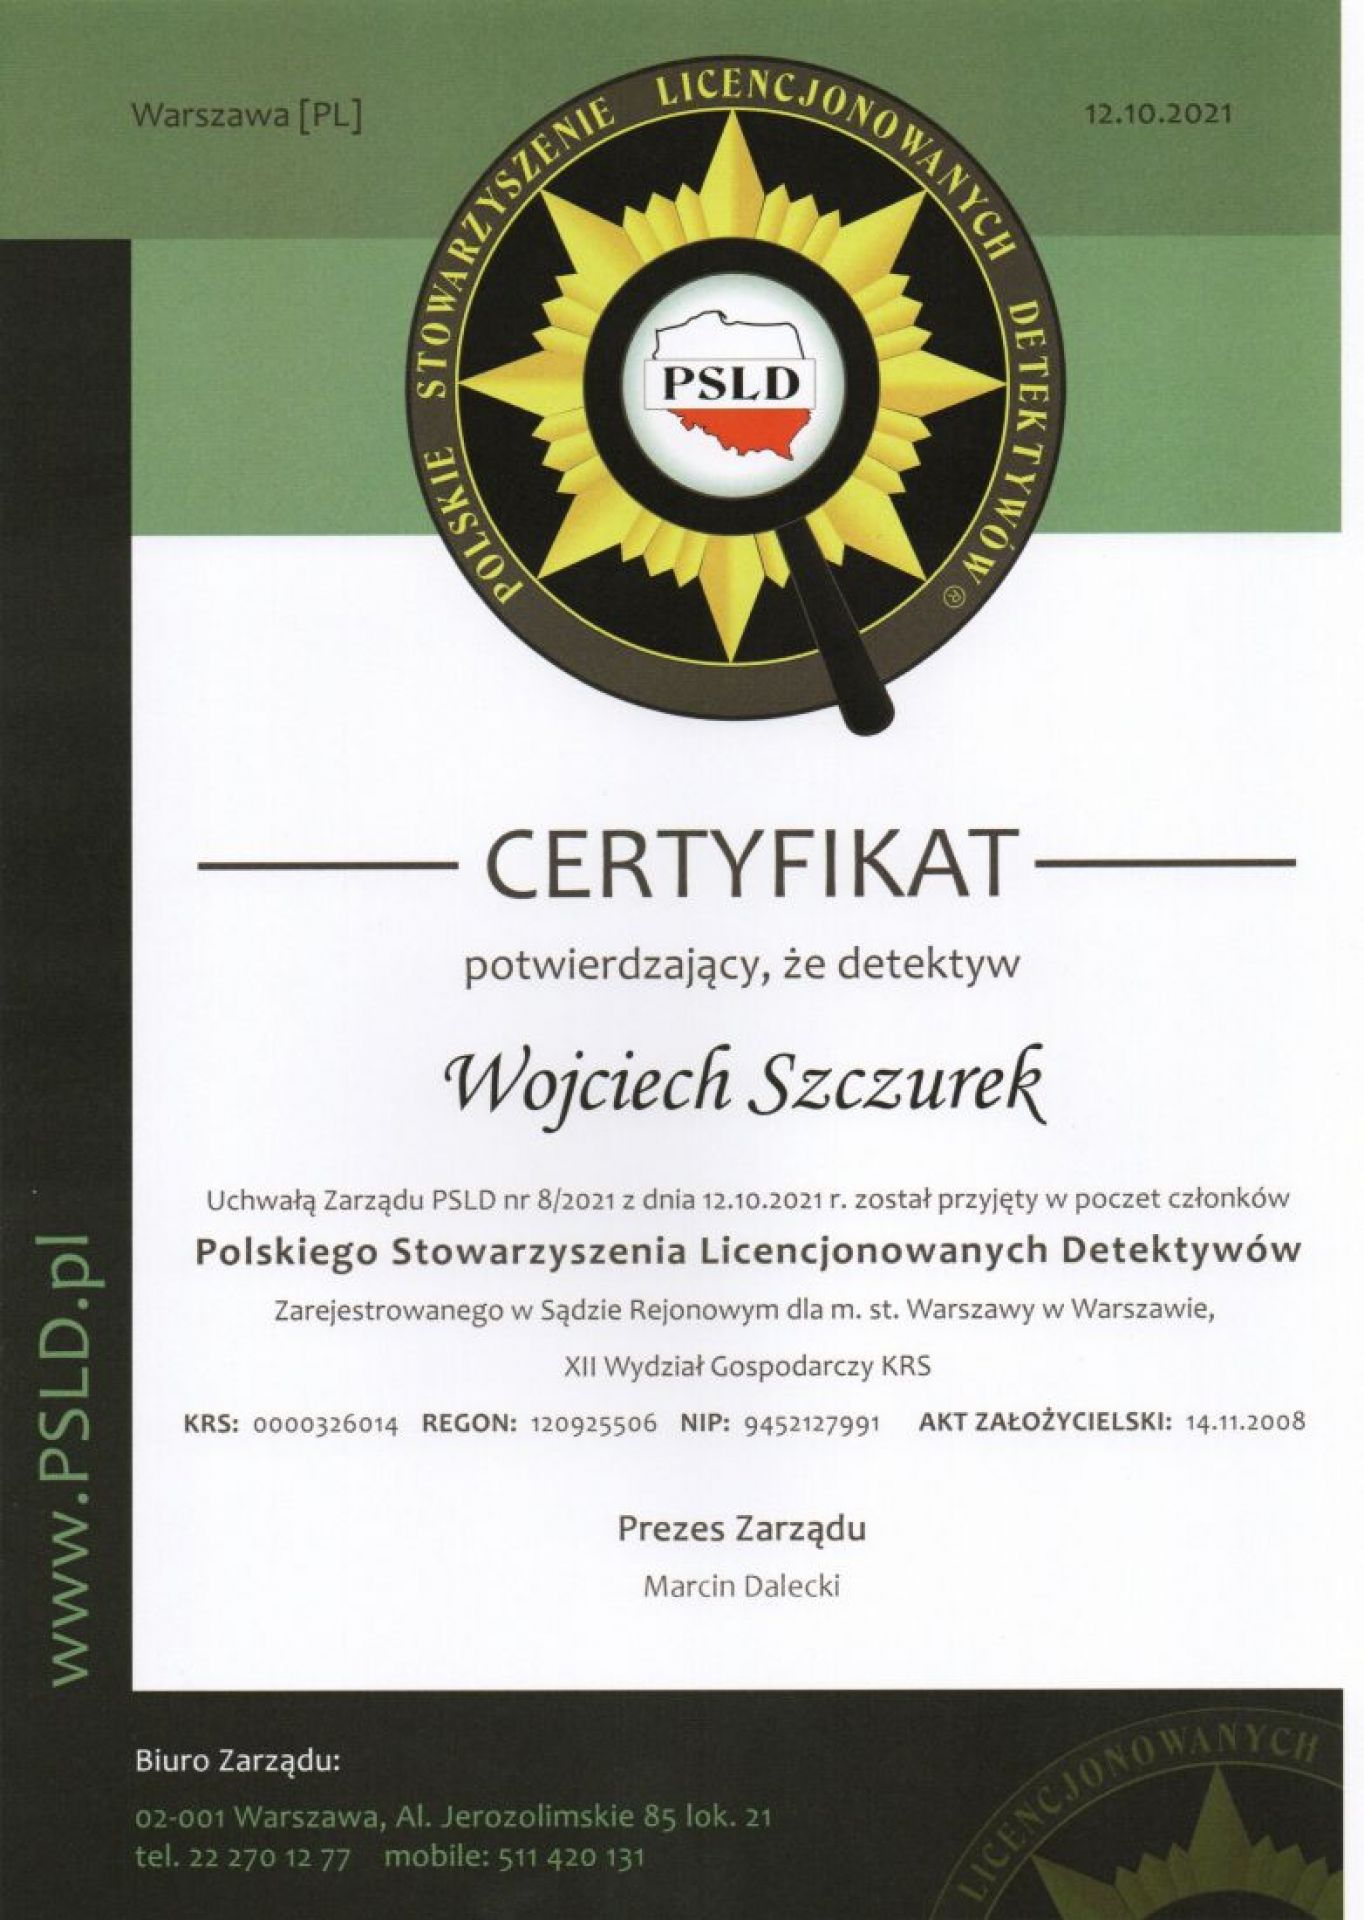 Koordynator Grupy Detektywistycznej Alert jest członkiem Polskiego Towarzystwa Licencjonowanych Detektywów.